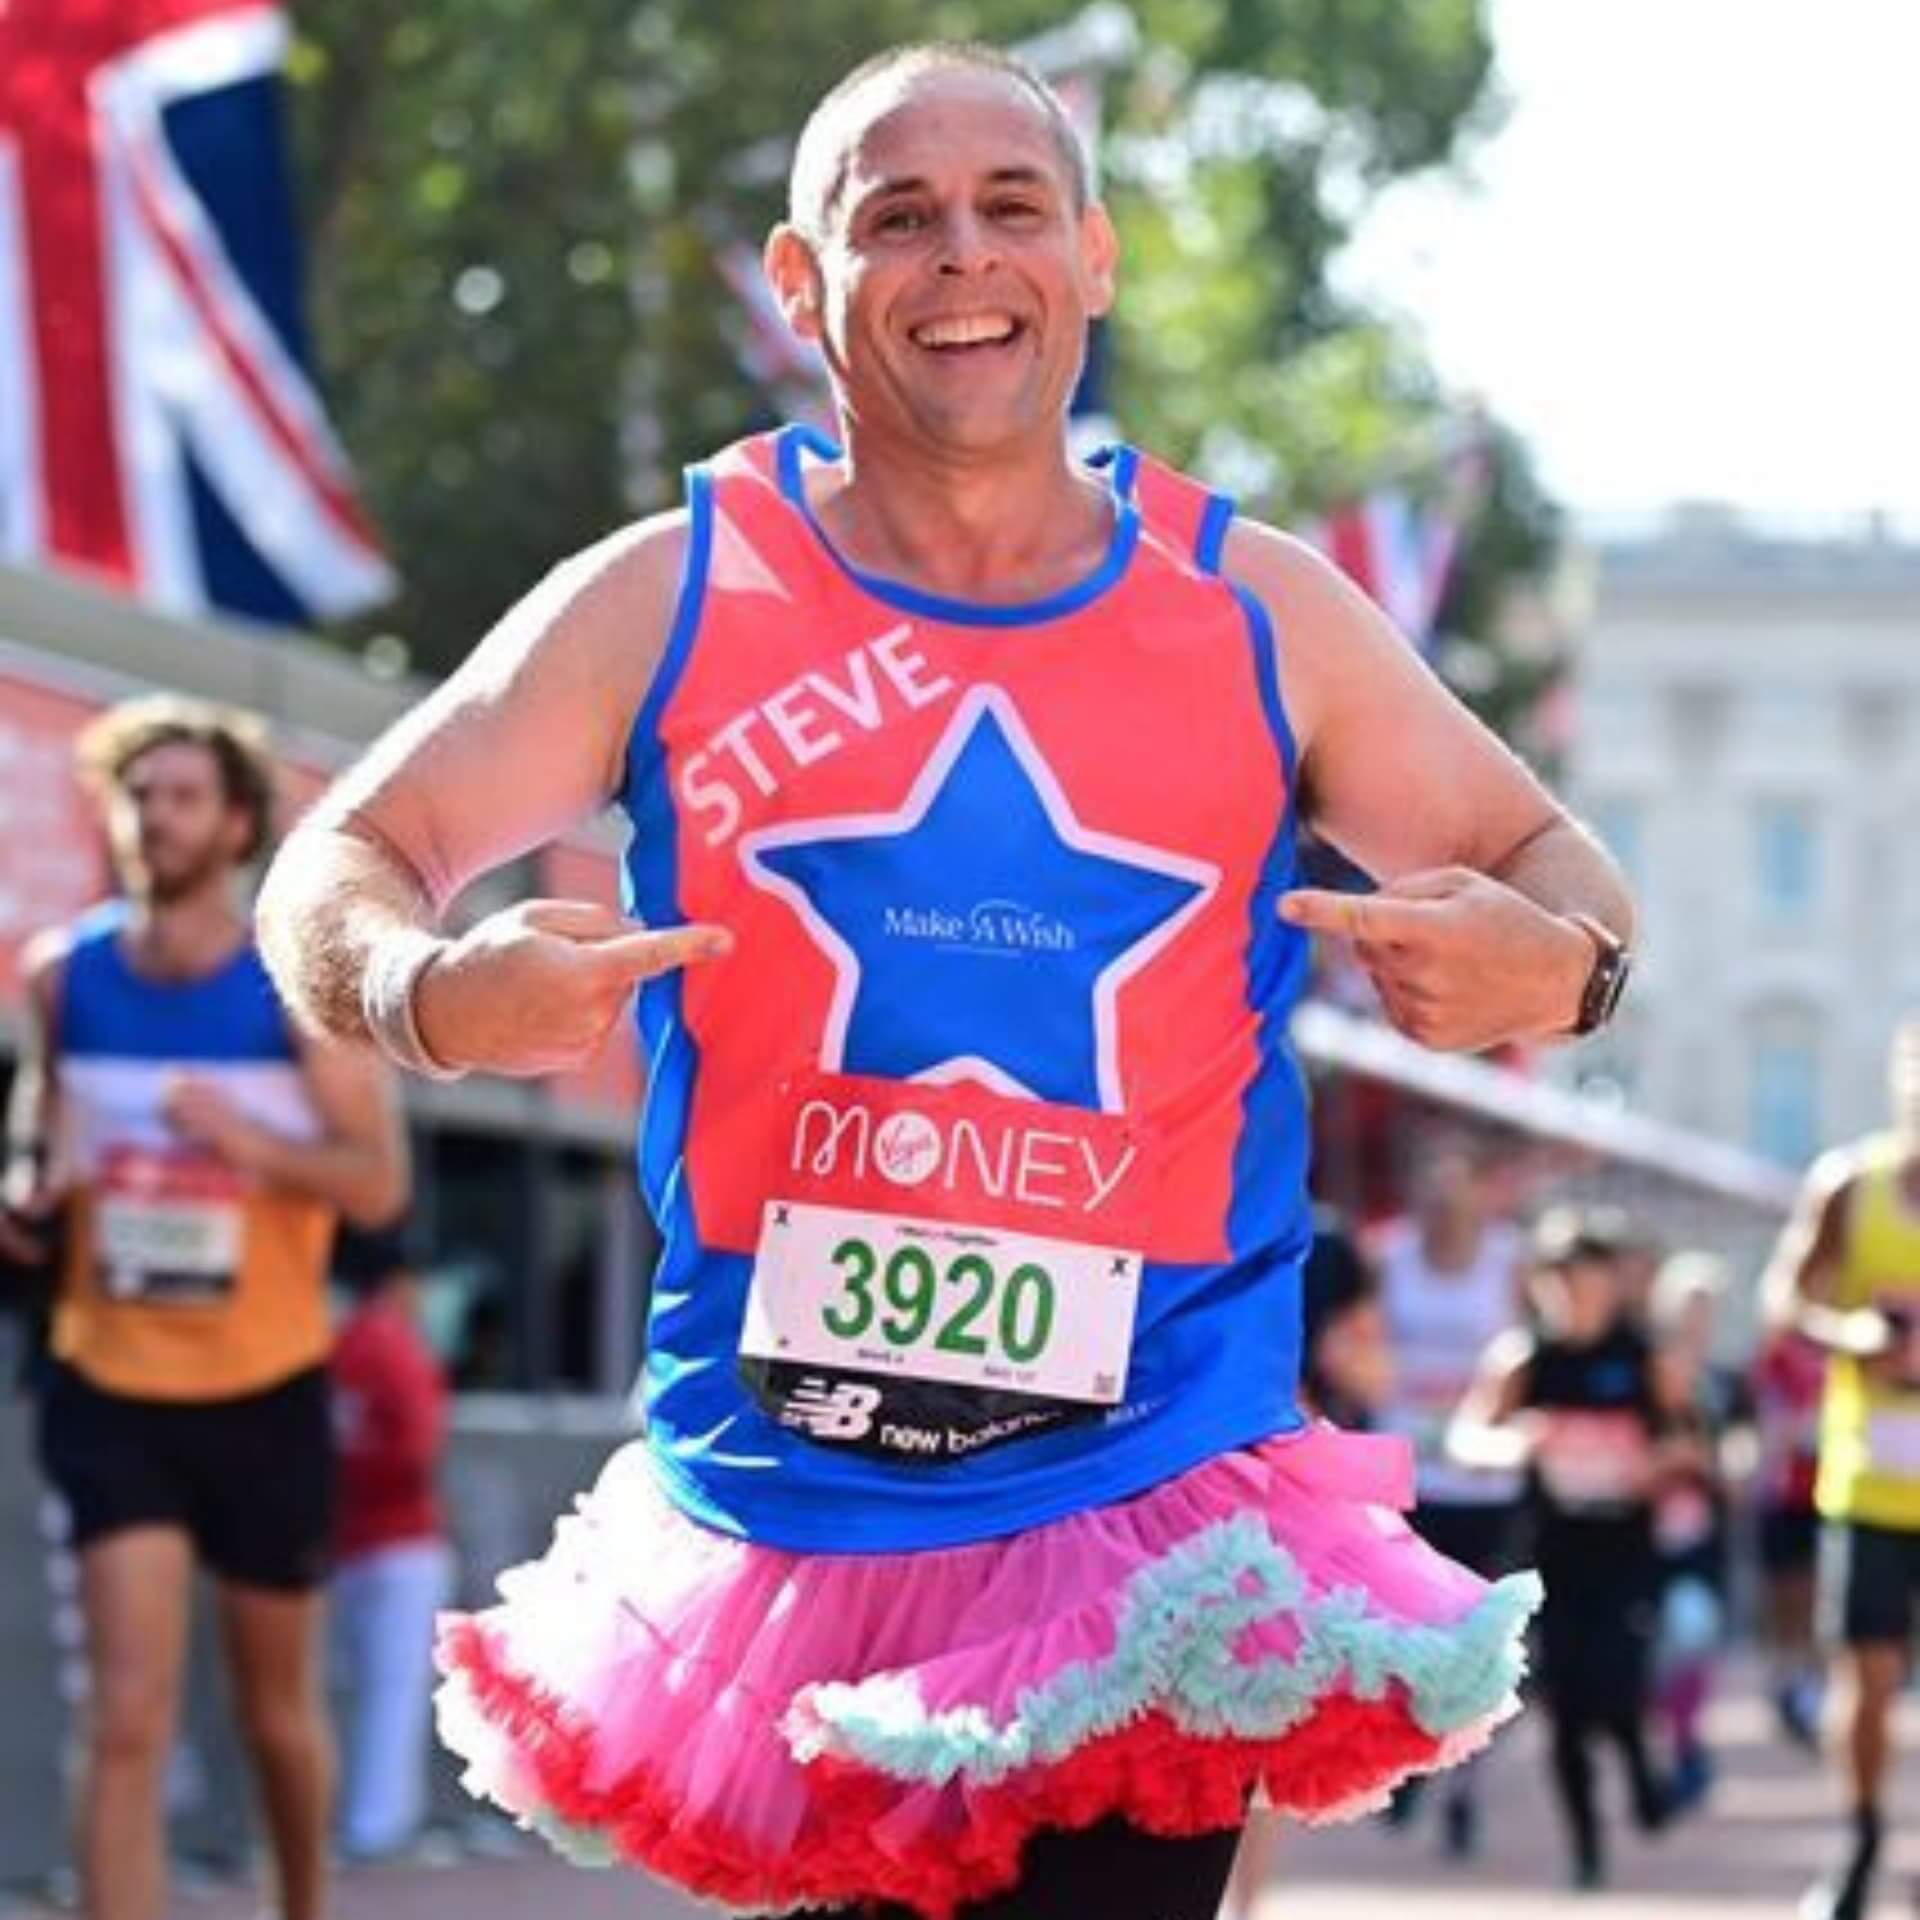 Steve - London Marathon (Make-A-Wish UK)